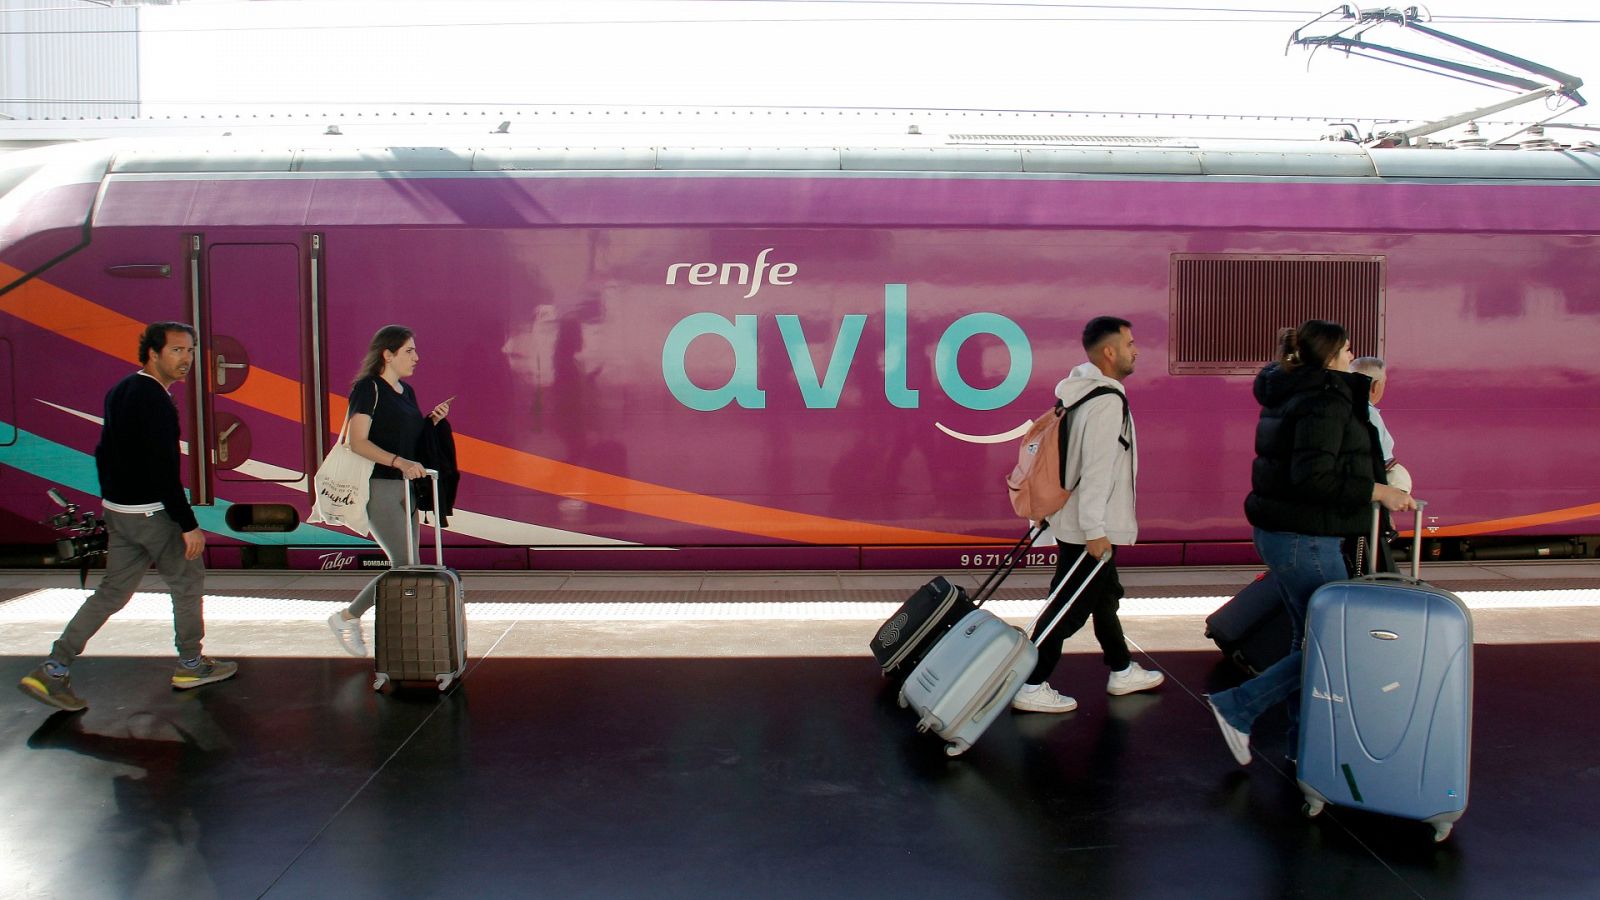 Estreno del trayecto en Avlo Madrid - Sevilla: consulta los precios